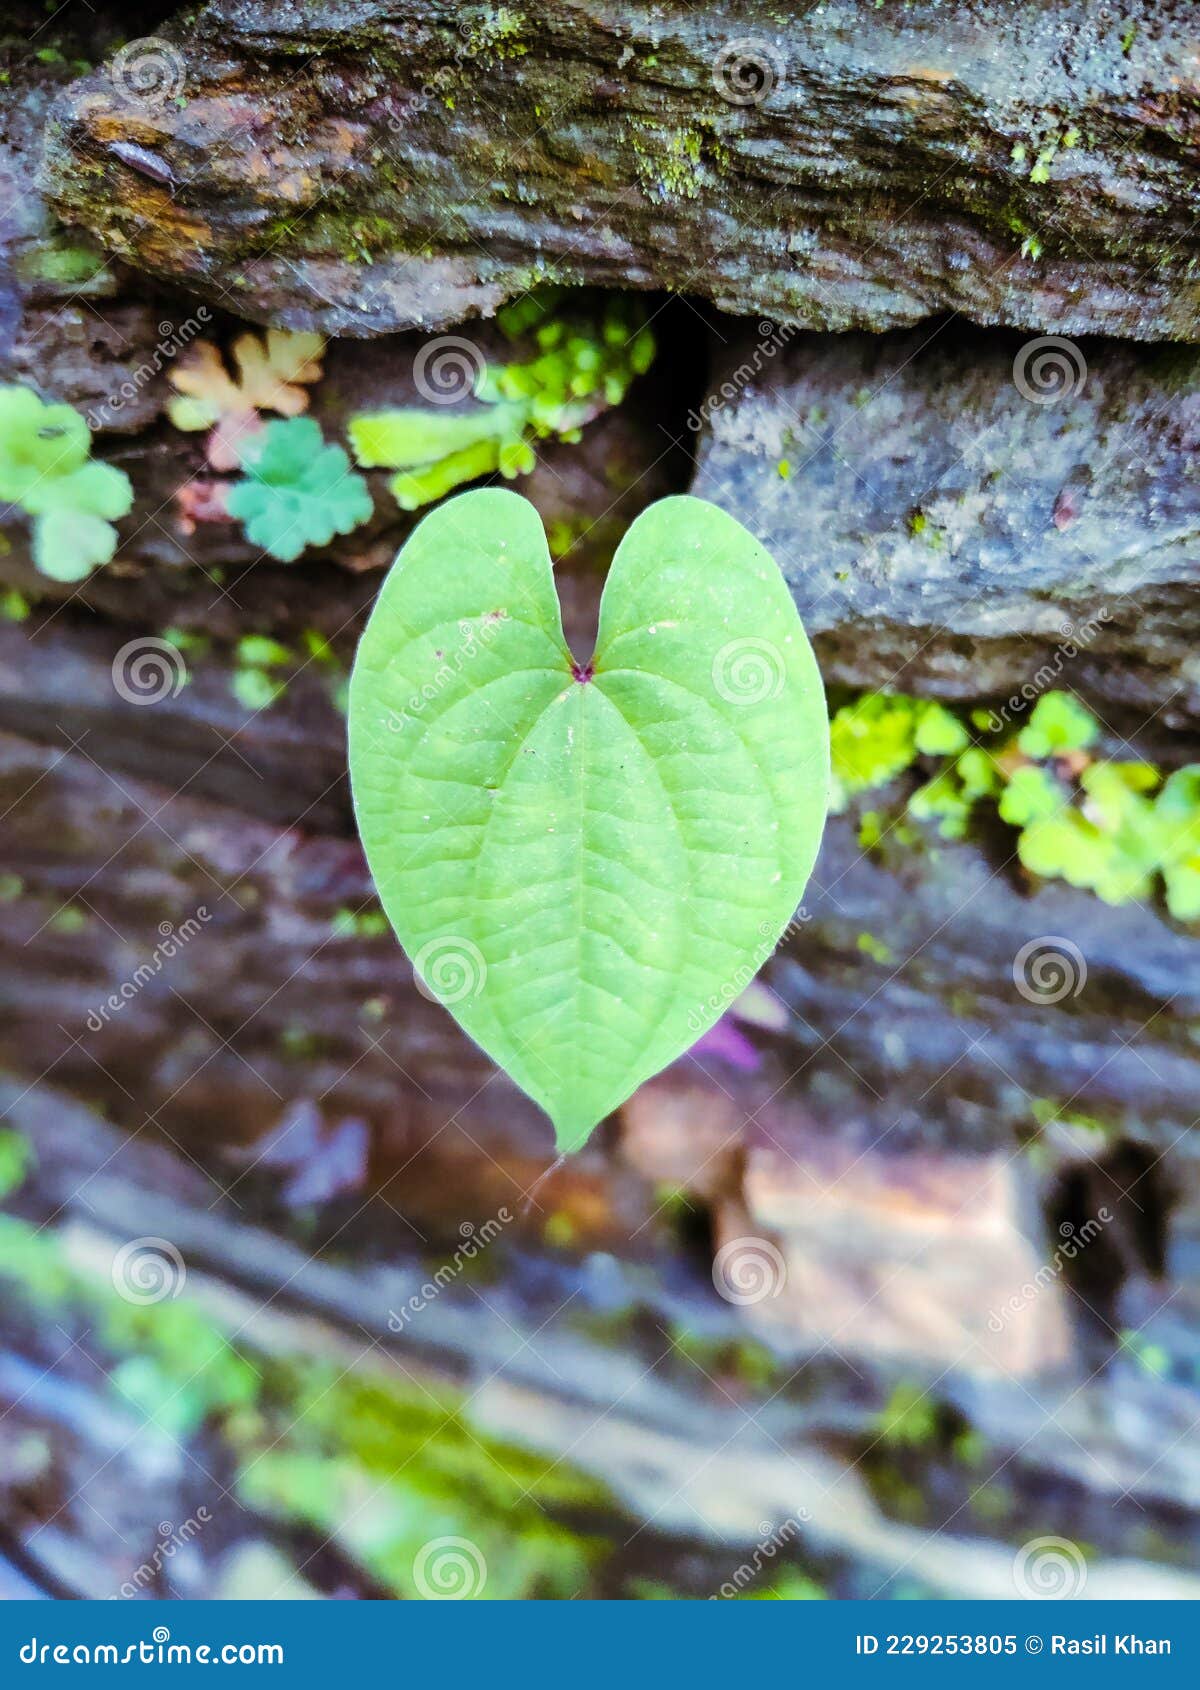 Heart Shaped Leaf Photography Background Stock Image - Image of shaped